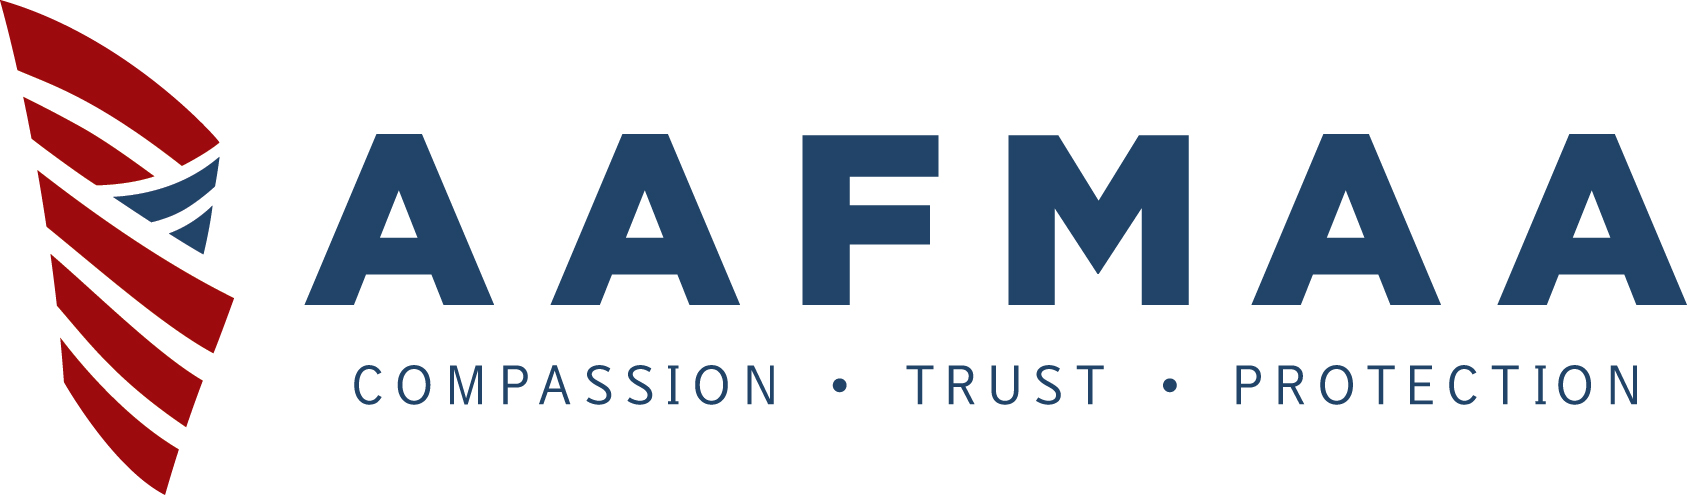 AAFMAA Logo.jpg